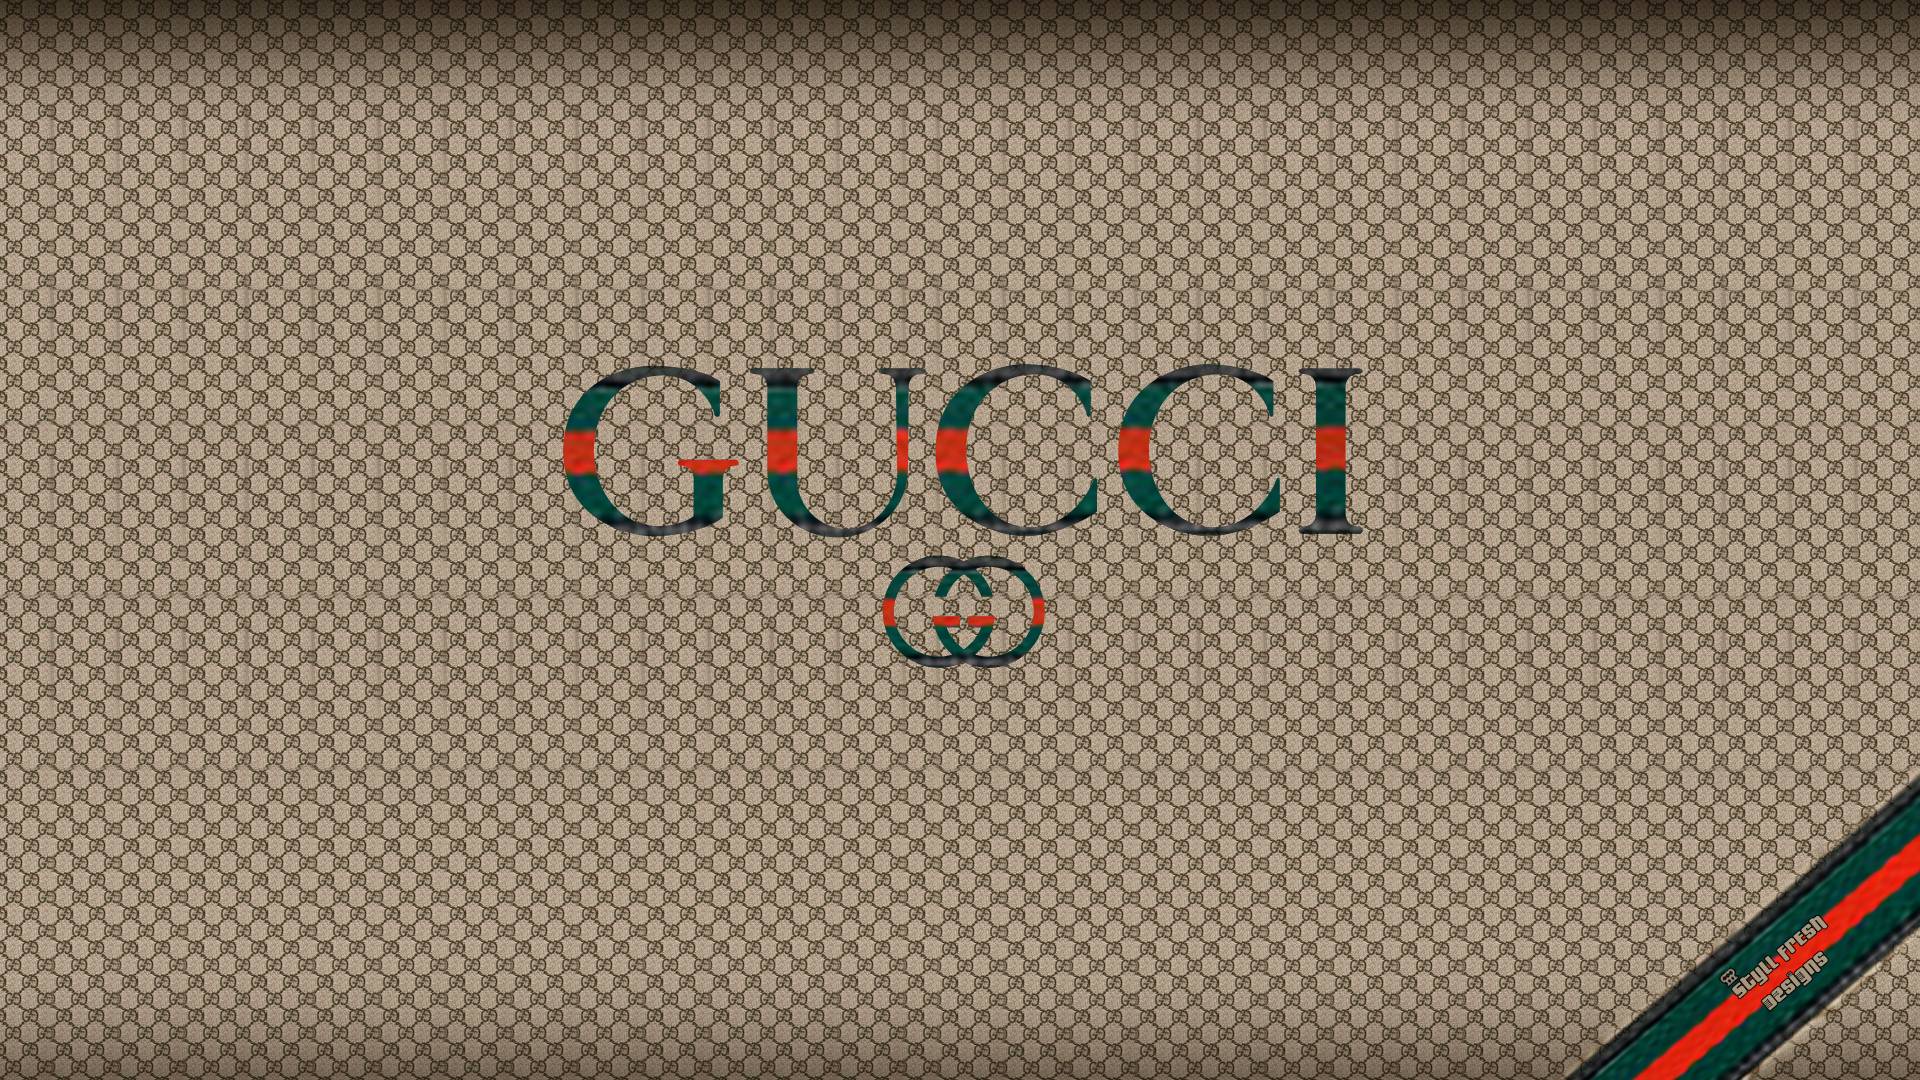 Hình Nền Gucci Đẹp Xịn Xò Full HD  HacoLED